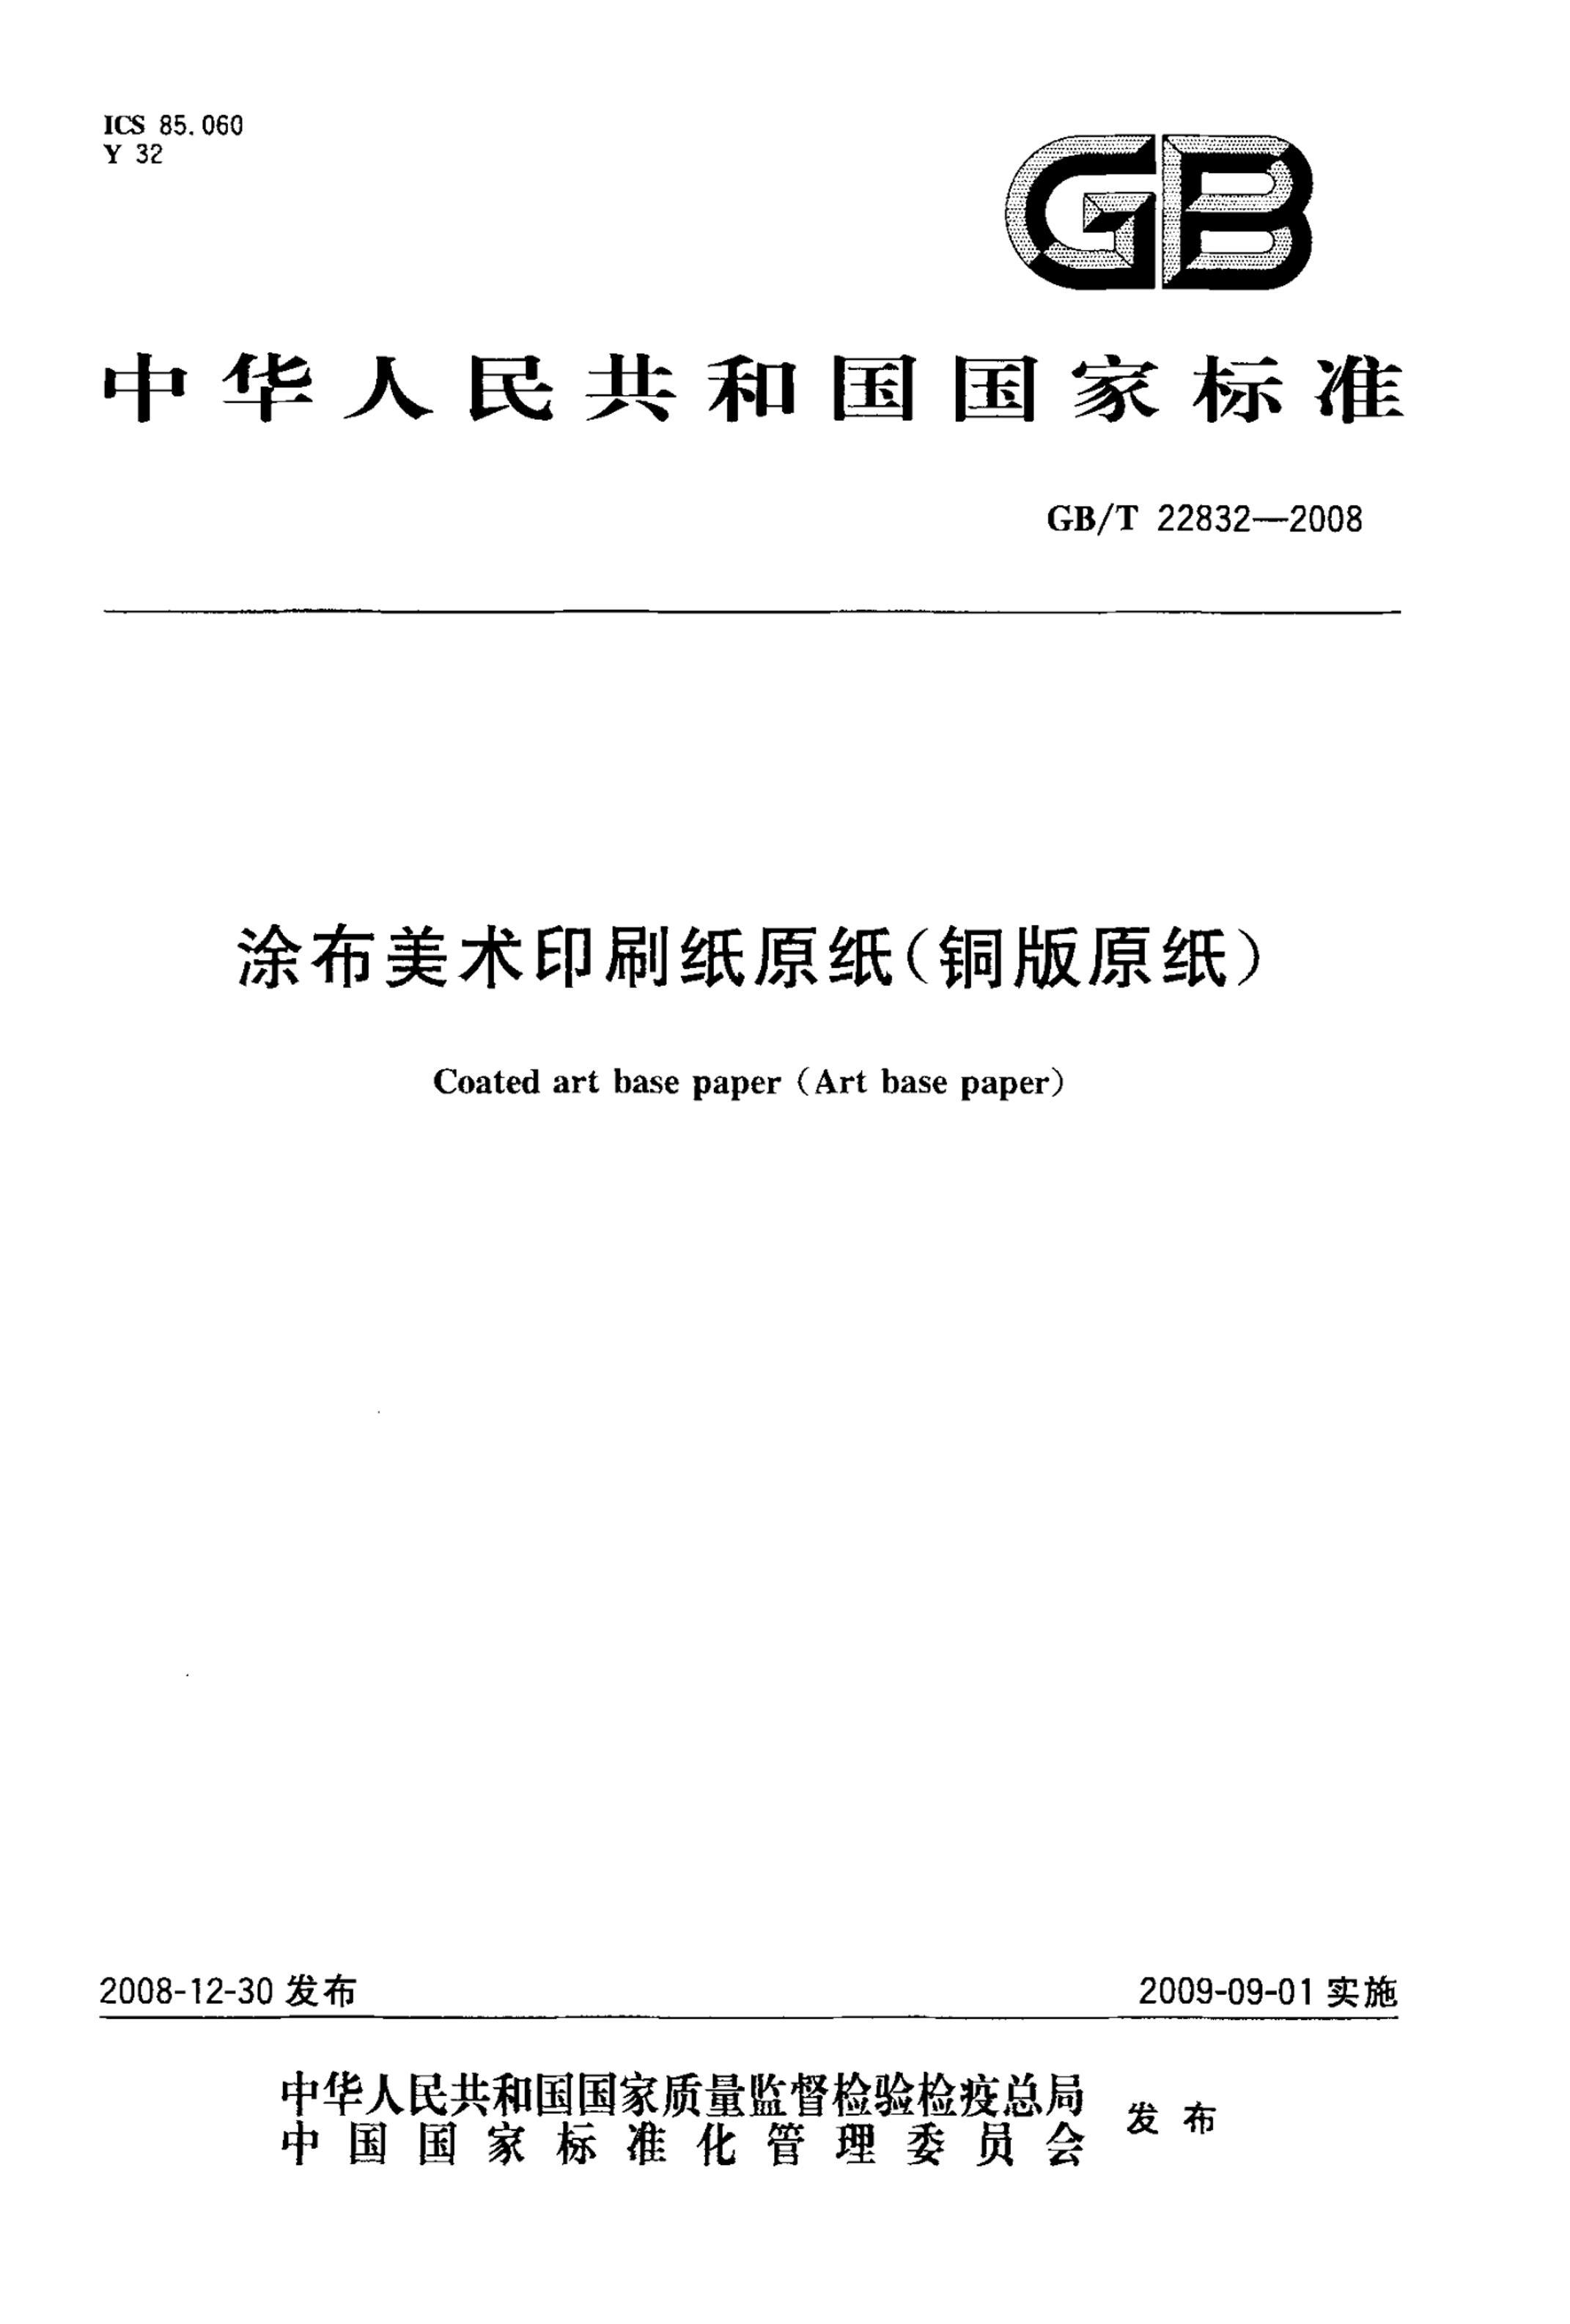 GBT 22832-2008 Ϳӡˢֽԭֽͭԭֽ.pdf1ҳ